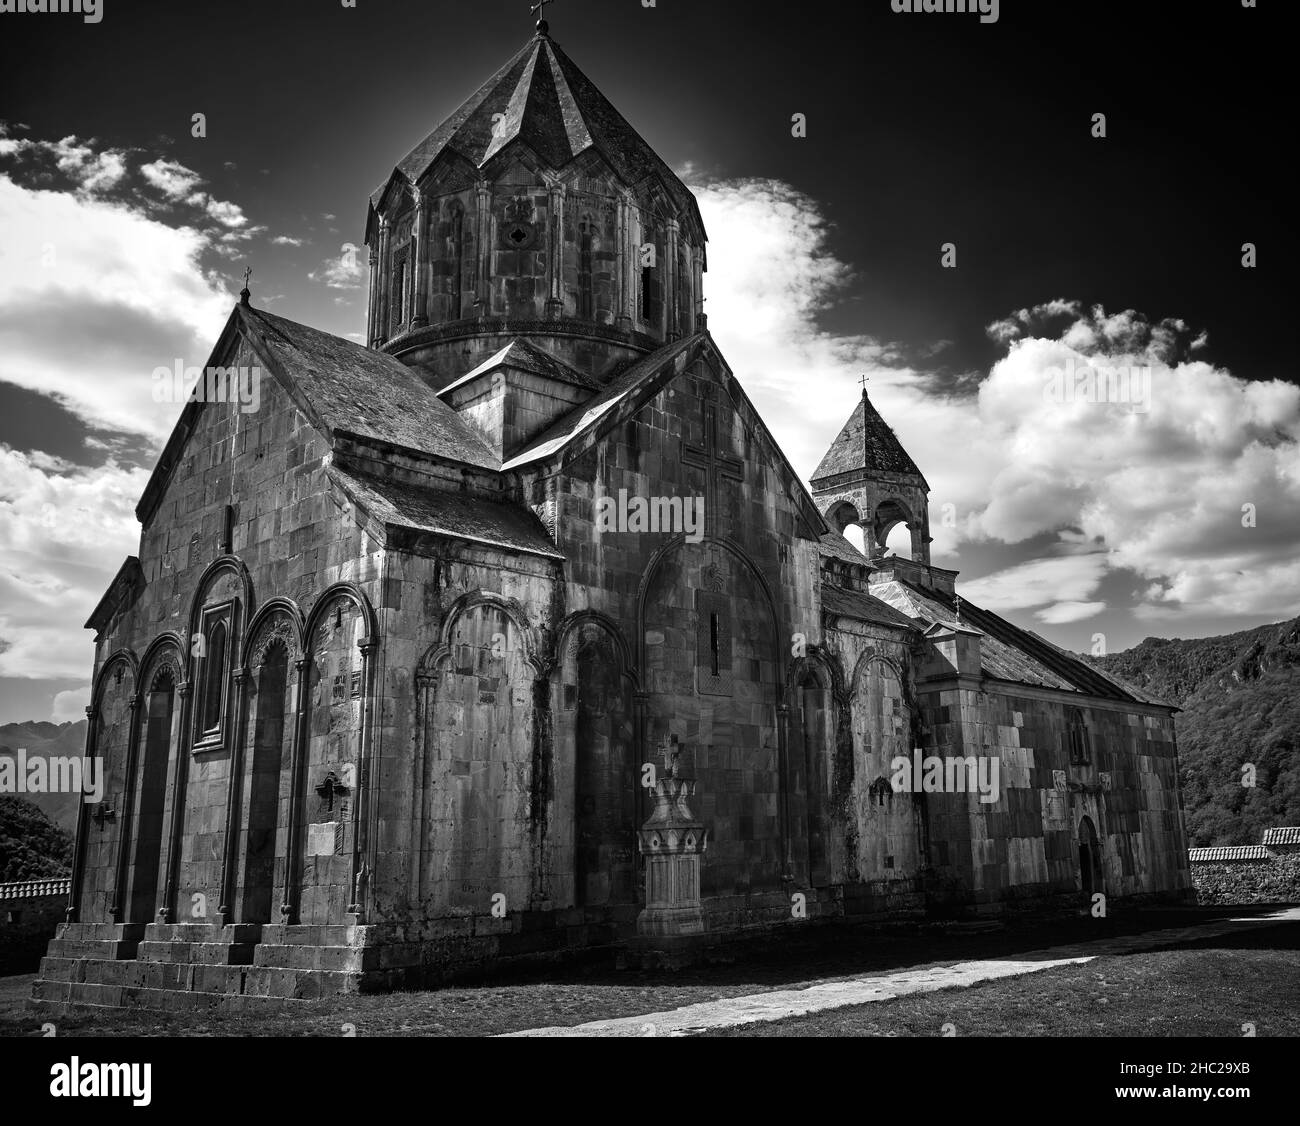 Une cathédrale apostolique arménienne de 13 siècles (monastère) qui a survécu à travers des siècles, appartient au public, n'est pas une propriété privée Banque D'Images